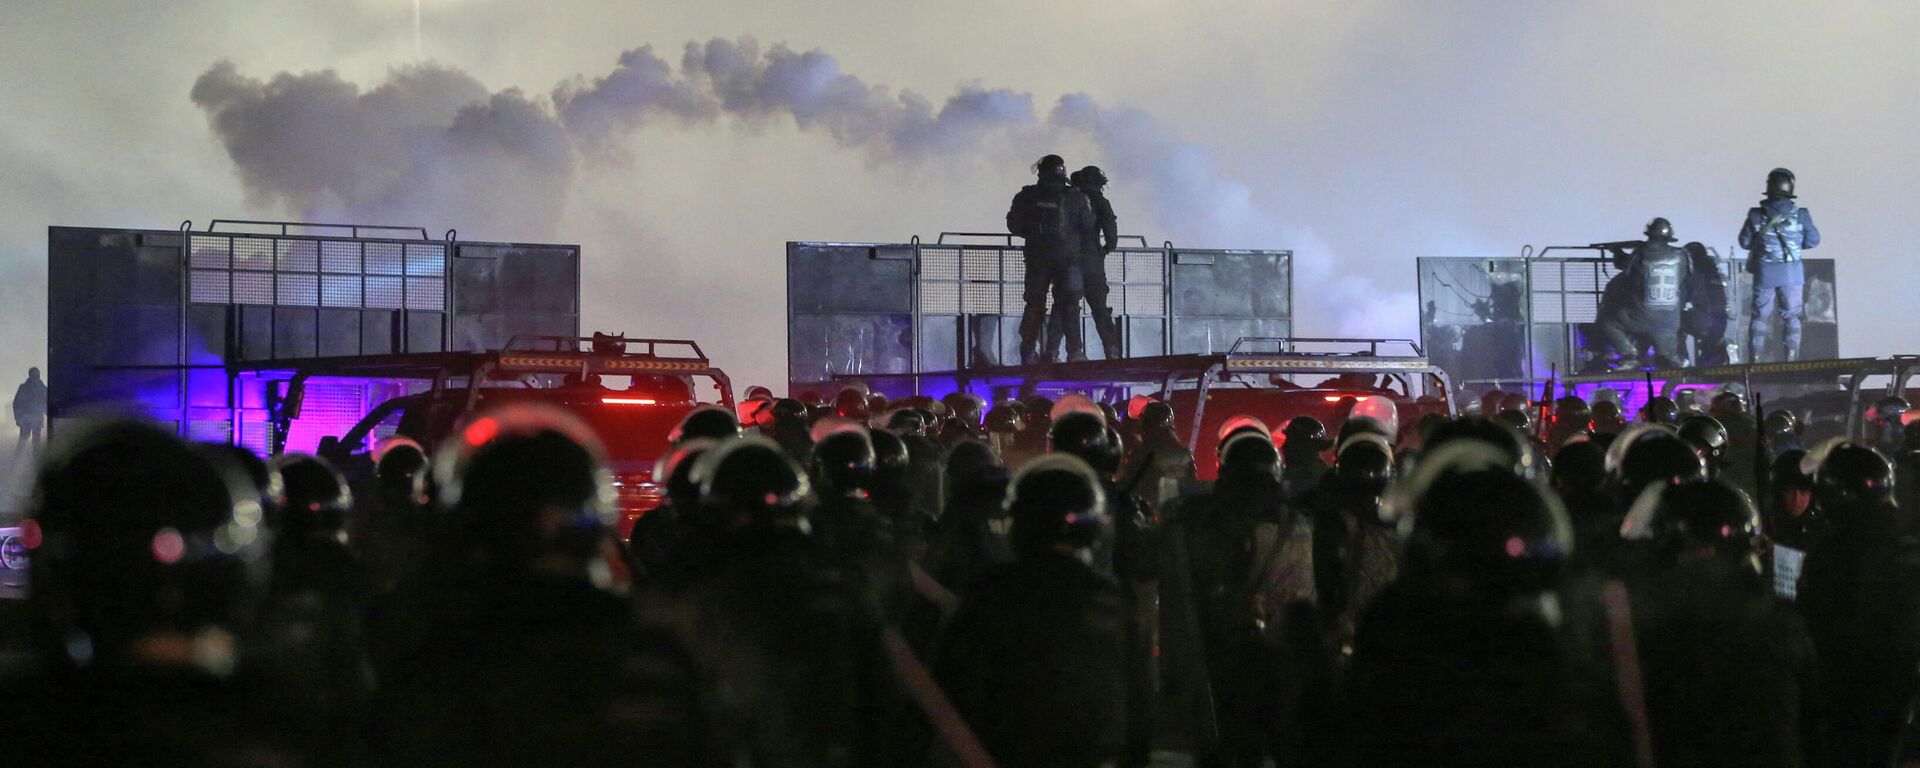 Сотрудники полиции на площади Алматы во время беспорядков против повышения цен сжиженного газа, Казахстан 5 января 2022 года - Sputnik Кыргызстан, 1920, 05.01.2022